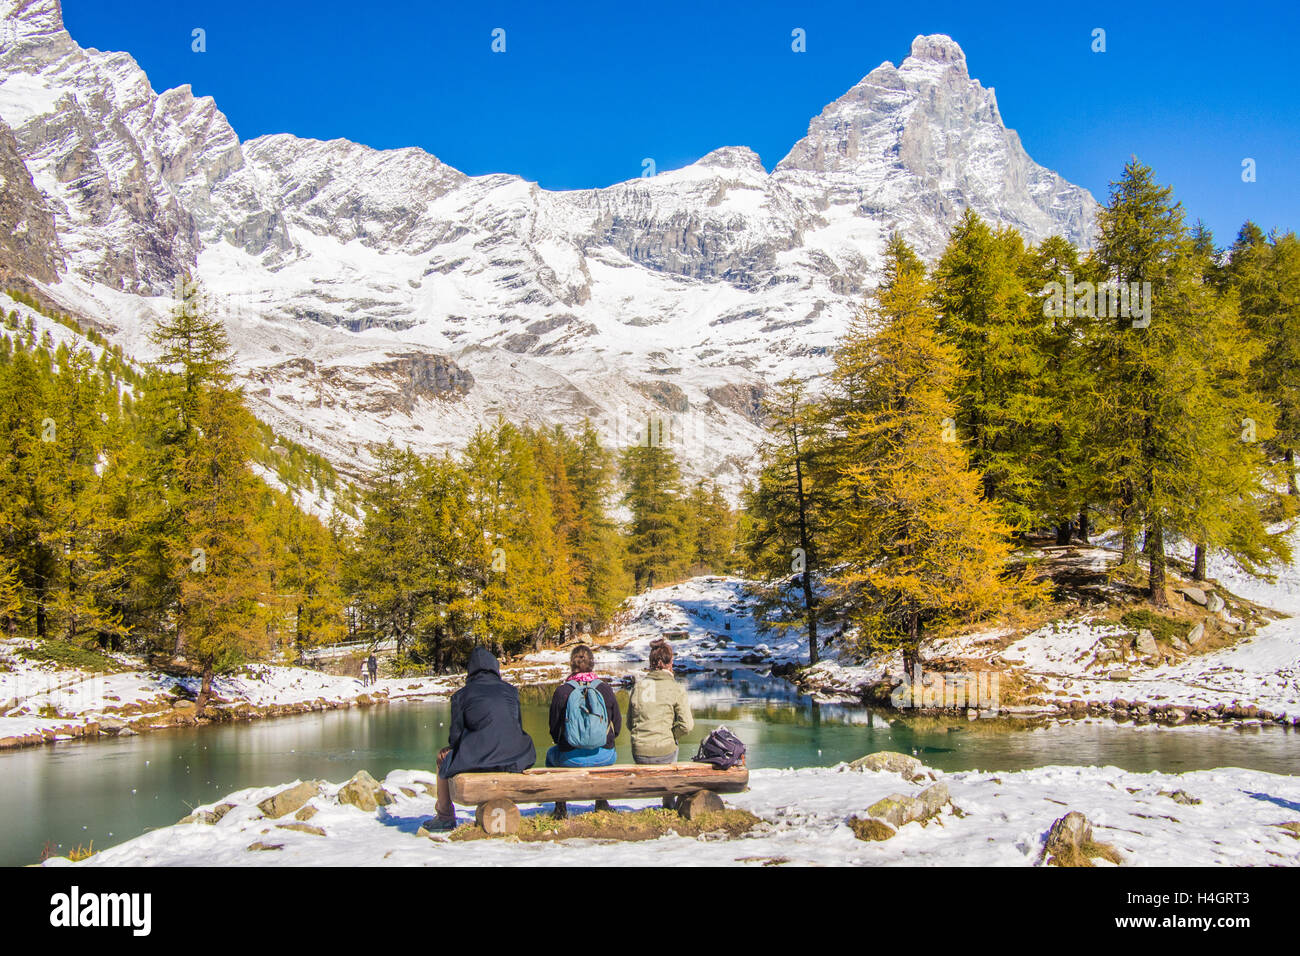 Lago Blu (Blauer See) mit dem Cervino Berg (in der Schweiz auch bekannt als "Matterhorn"), Aostatal, Italien. Freunde sitzen auf einer Bank. Stockfoto